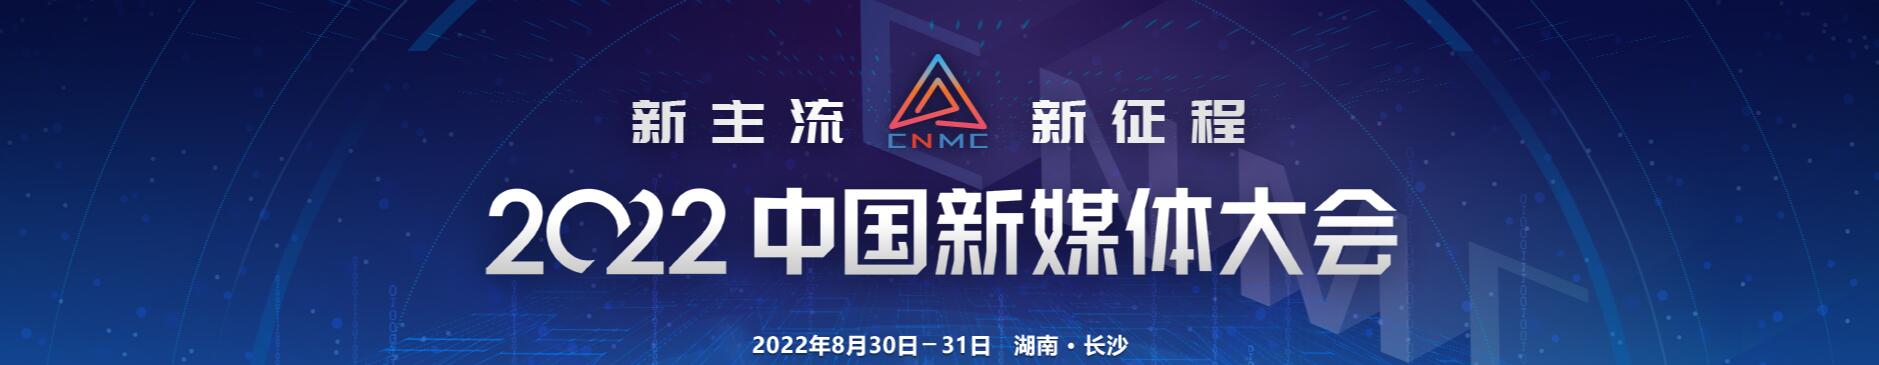 2022中国新媒体大会